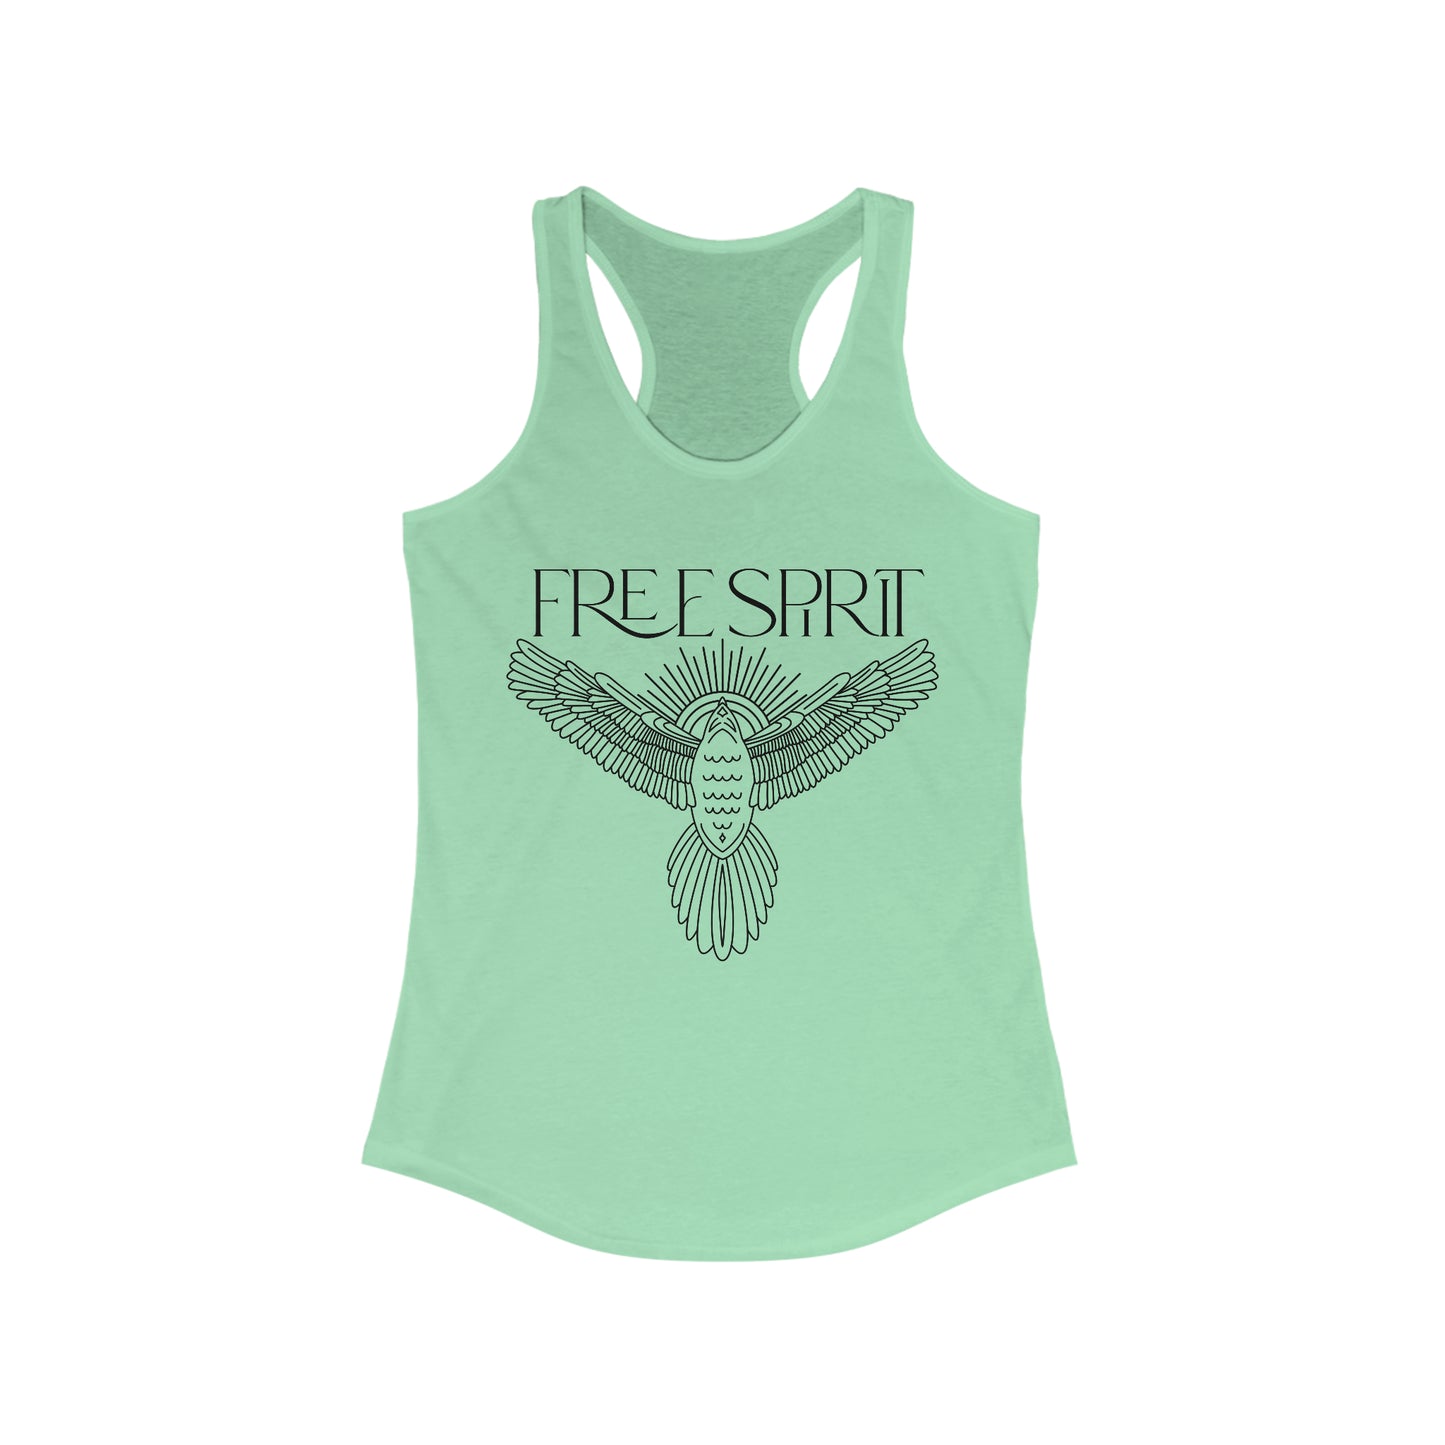 Free Spirit, Women's Racerback Tank